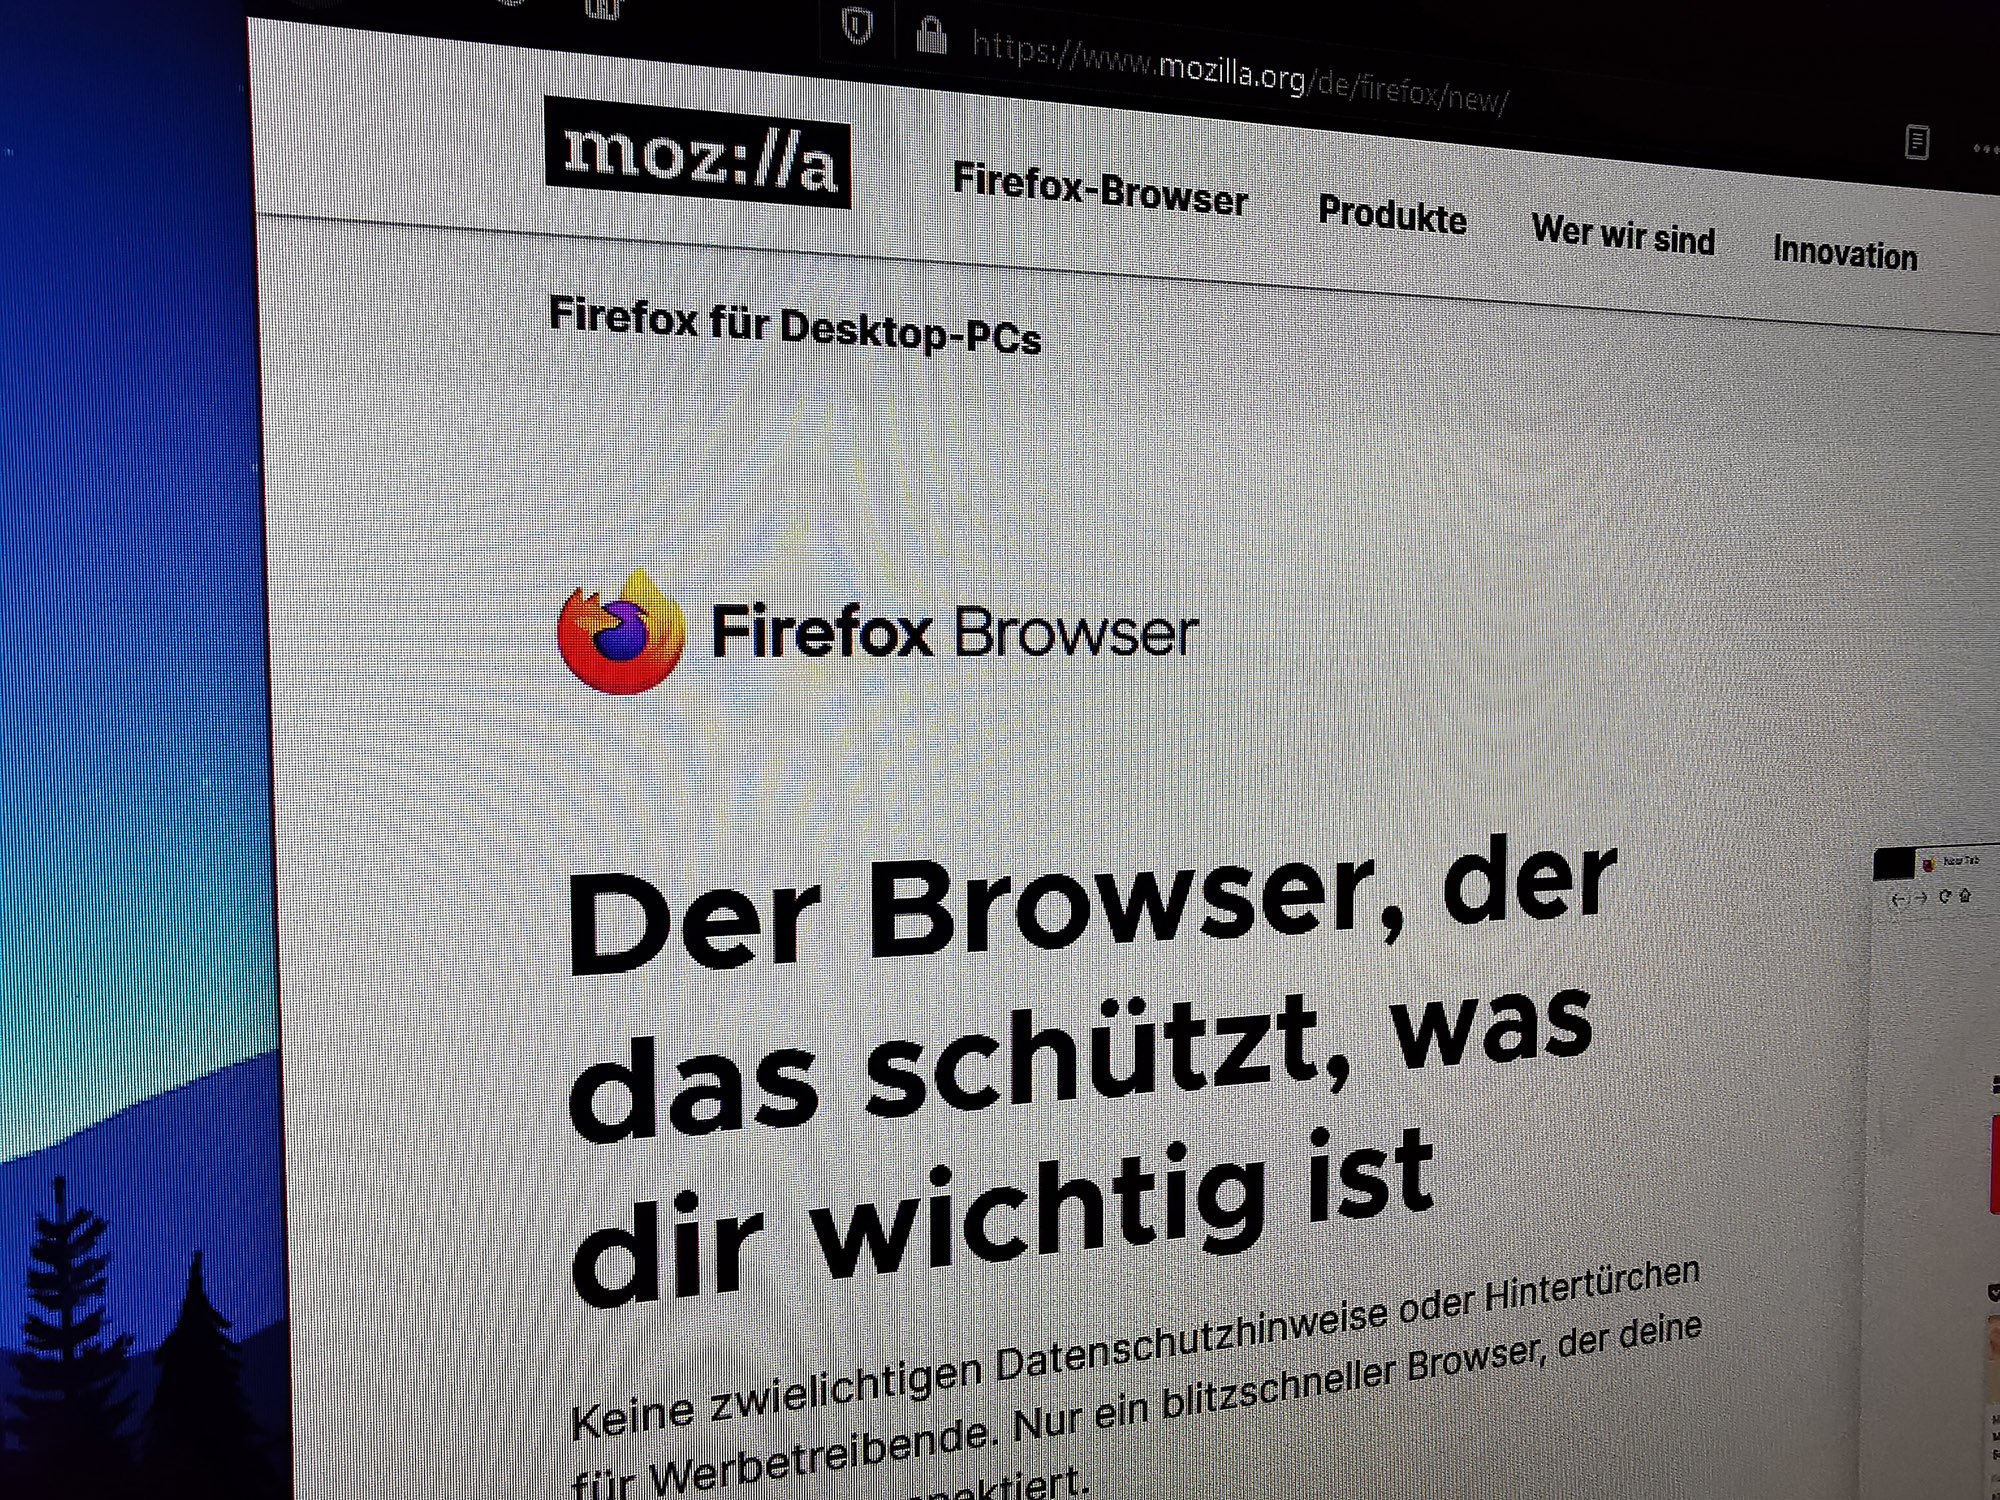 Firefox4-Update–Verbessertes Surfen